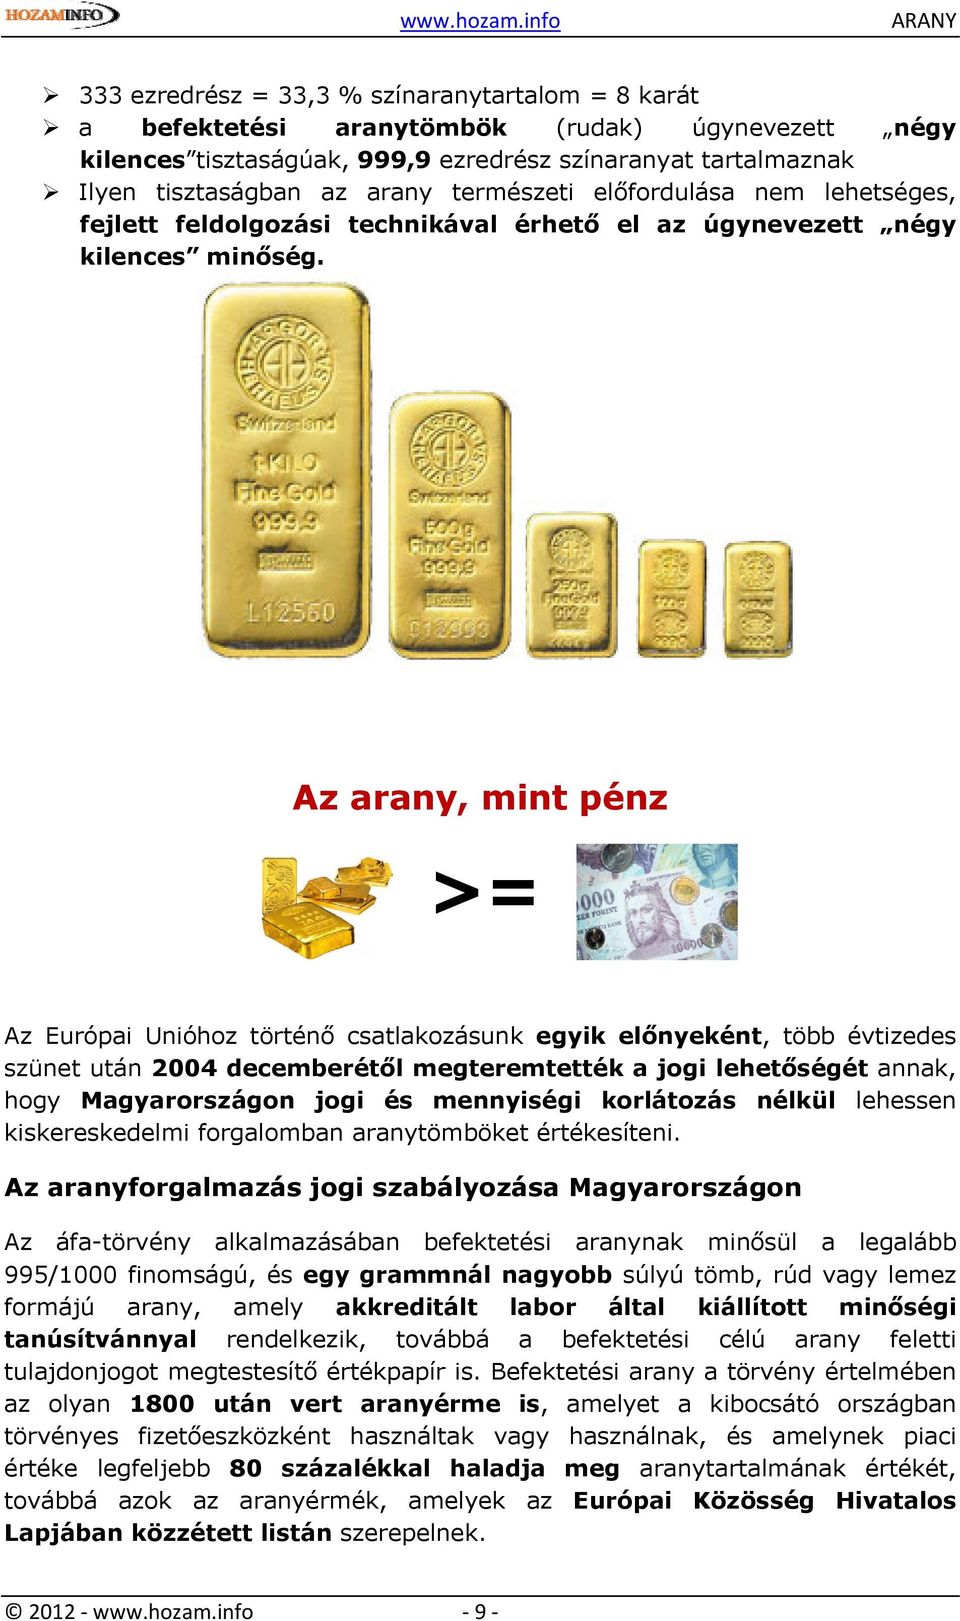 Az arany, mint pénz >= Az Európai Unióhoz történő csatlakozásunk egyik előnyeként, több évtizedes szünet után 2004 decemberétől megteremtették a jogi lehetőségét annak, hogy Magyarországon jogi és